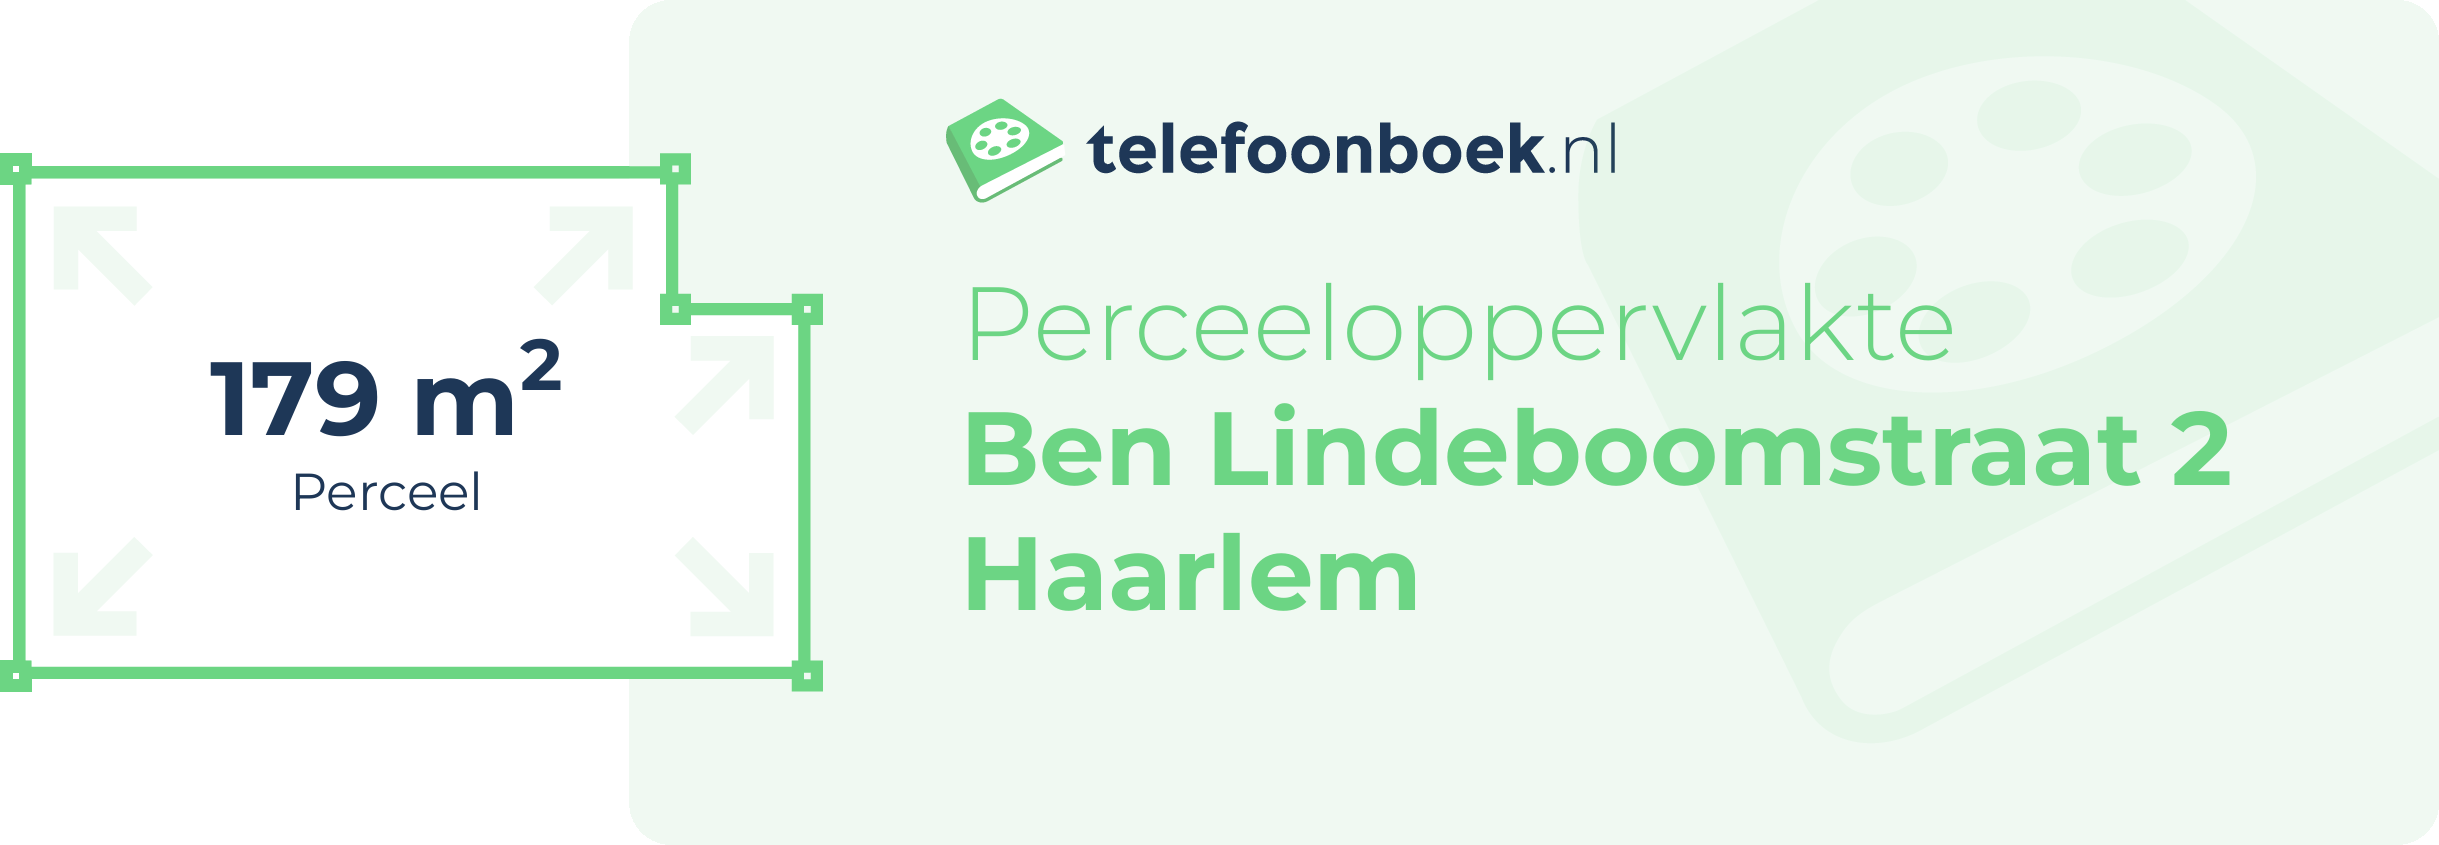 Perceeloppervlakte Ben Lindeboomstraat 2 Haarlem